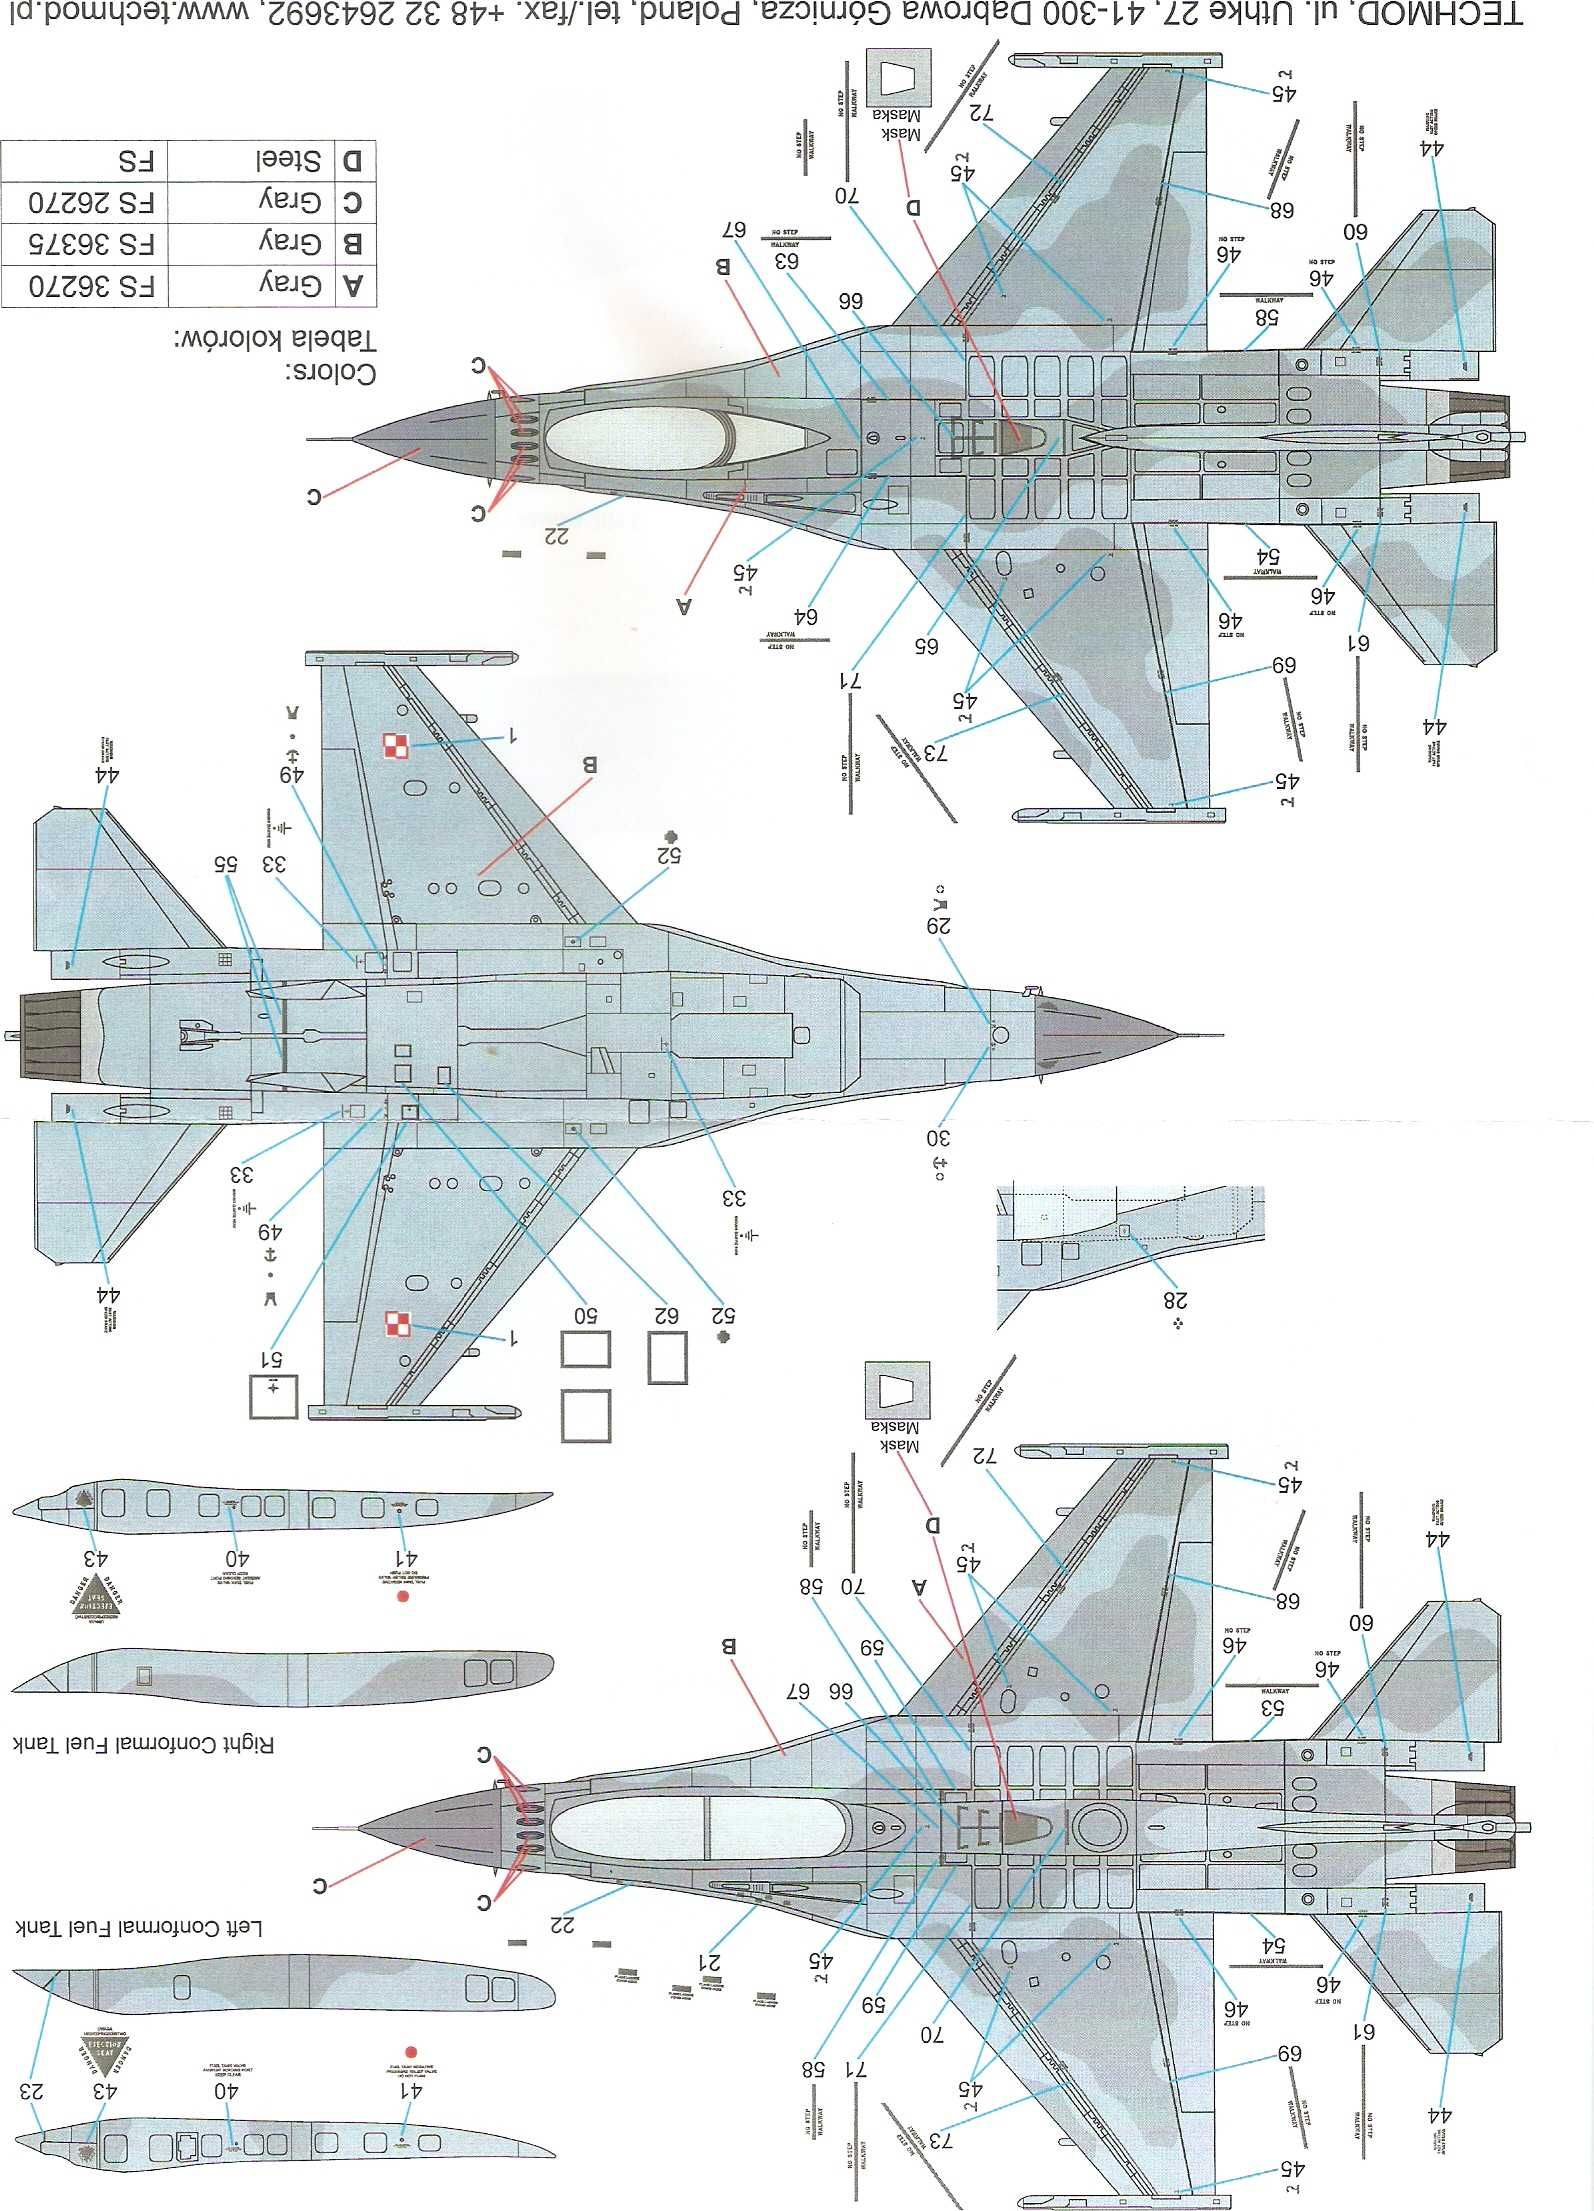 F-16 block 52+ Polskie Siły Powietrzne. Mistercraft/ Italeri, 1:48